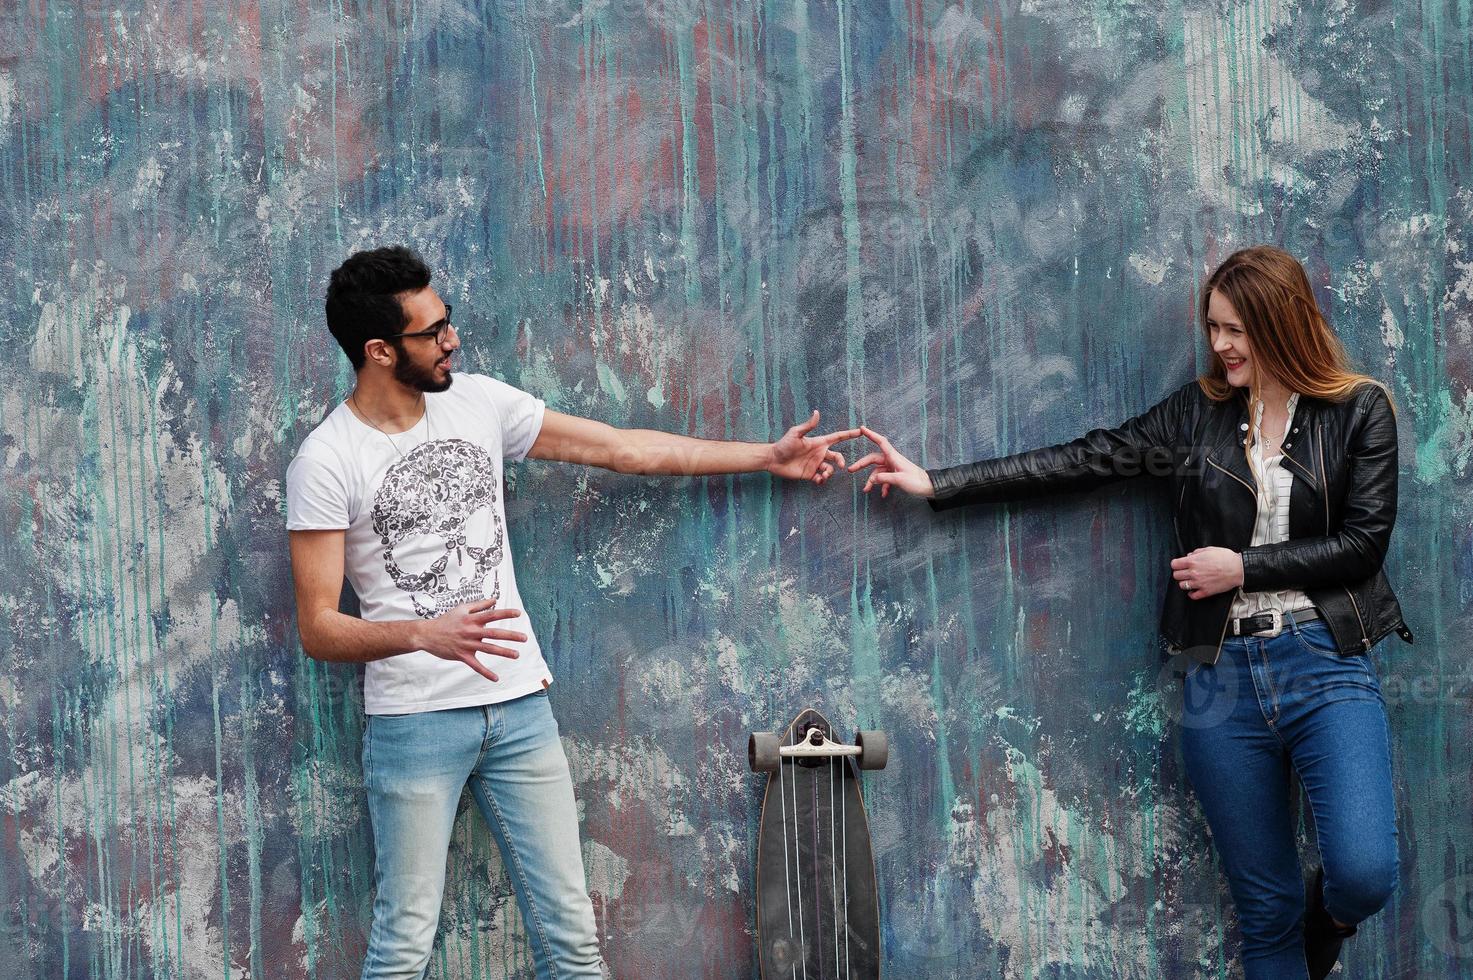 cool couple multiracial posant contre le mur avec longboard et se touchant les doigts. photo